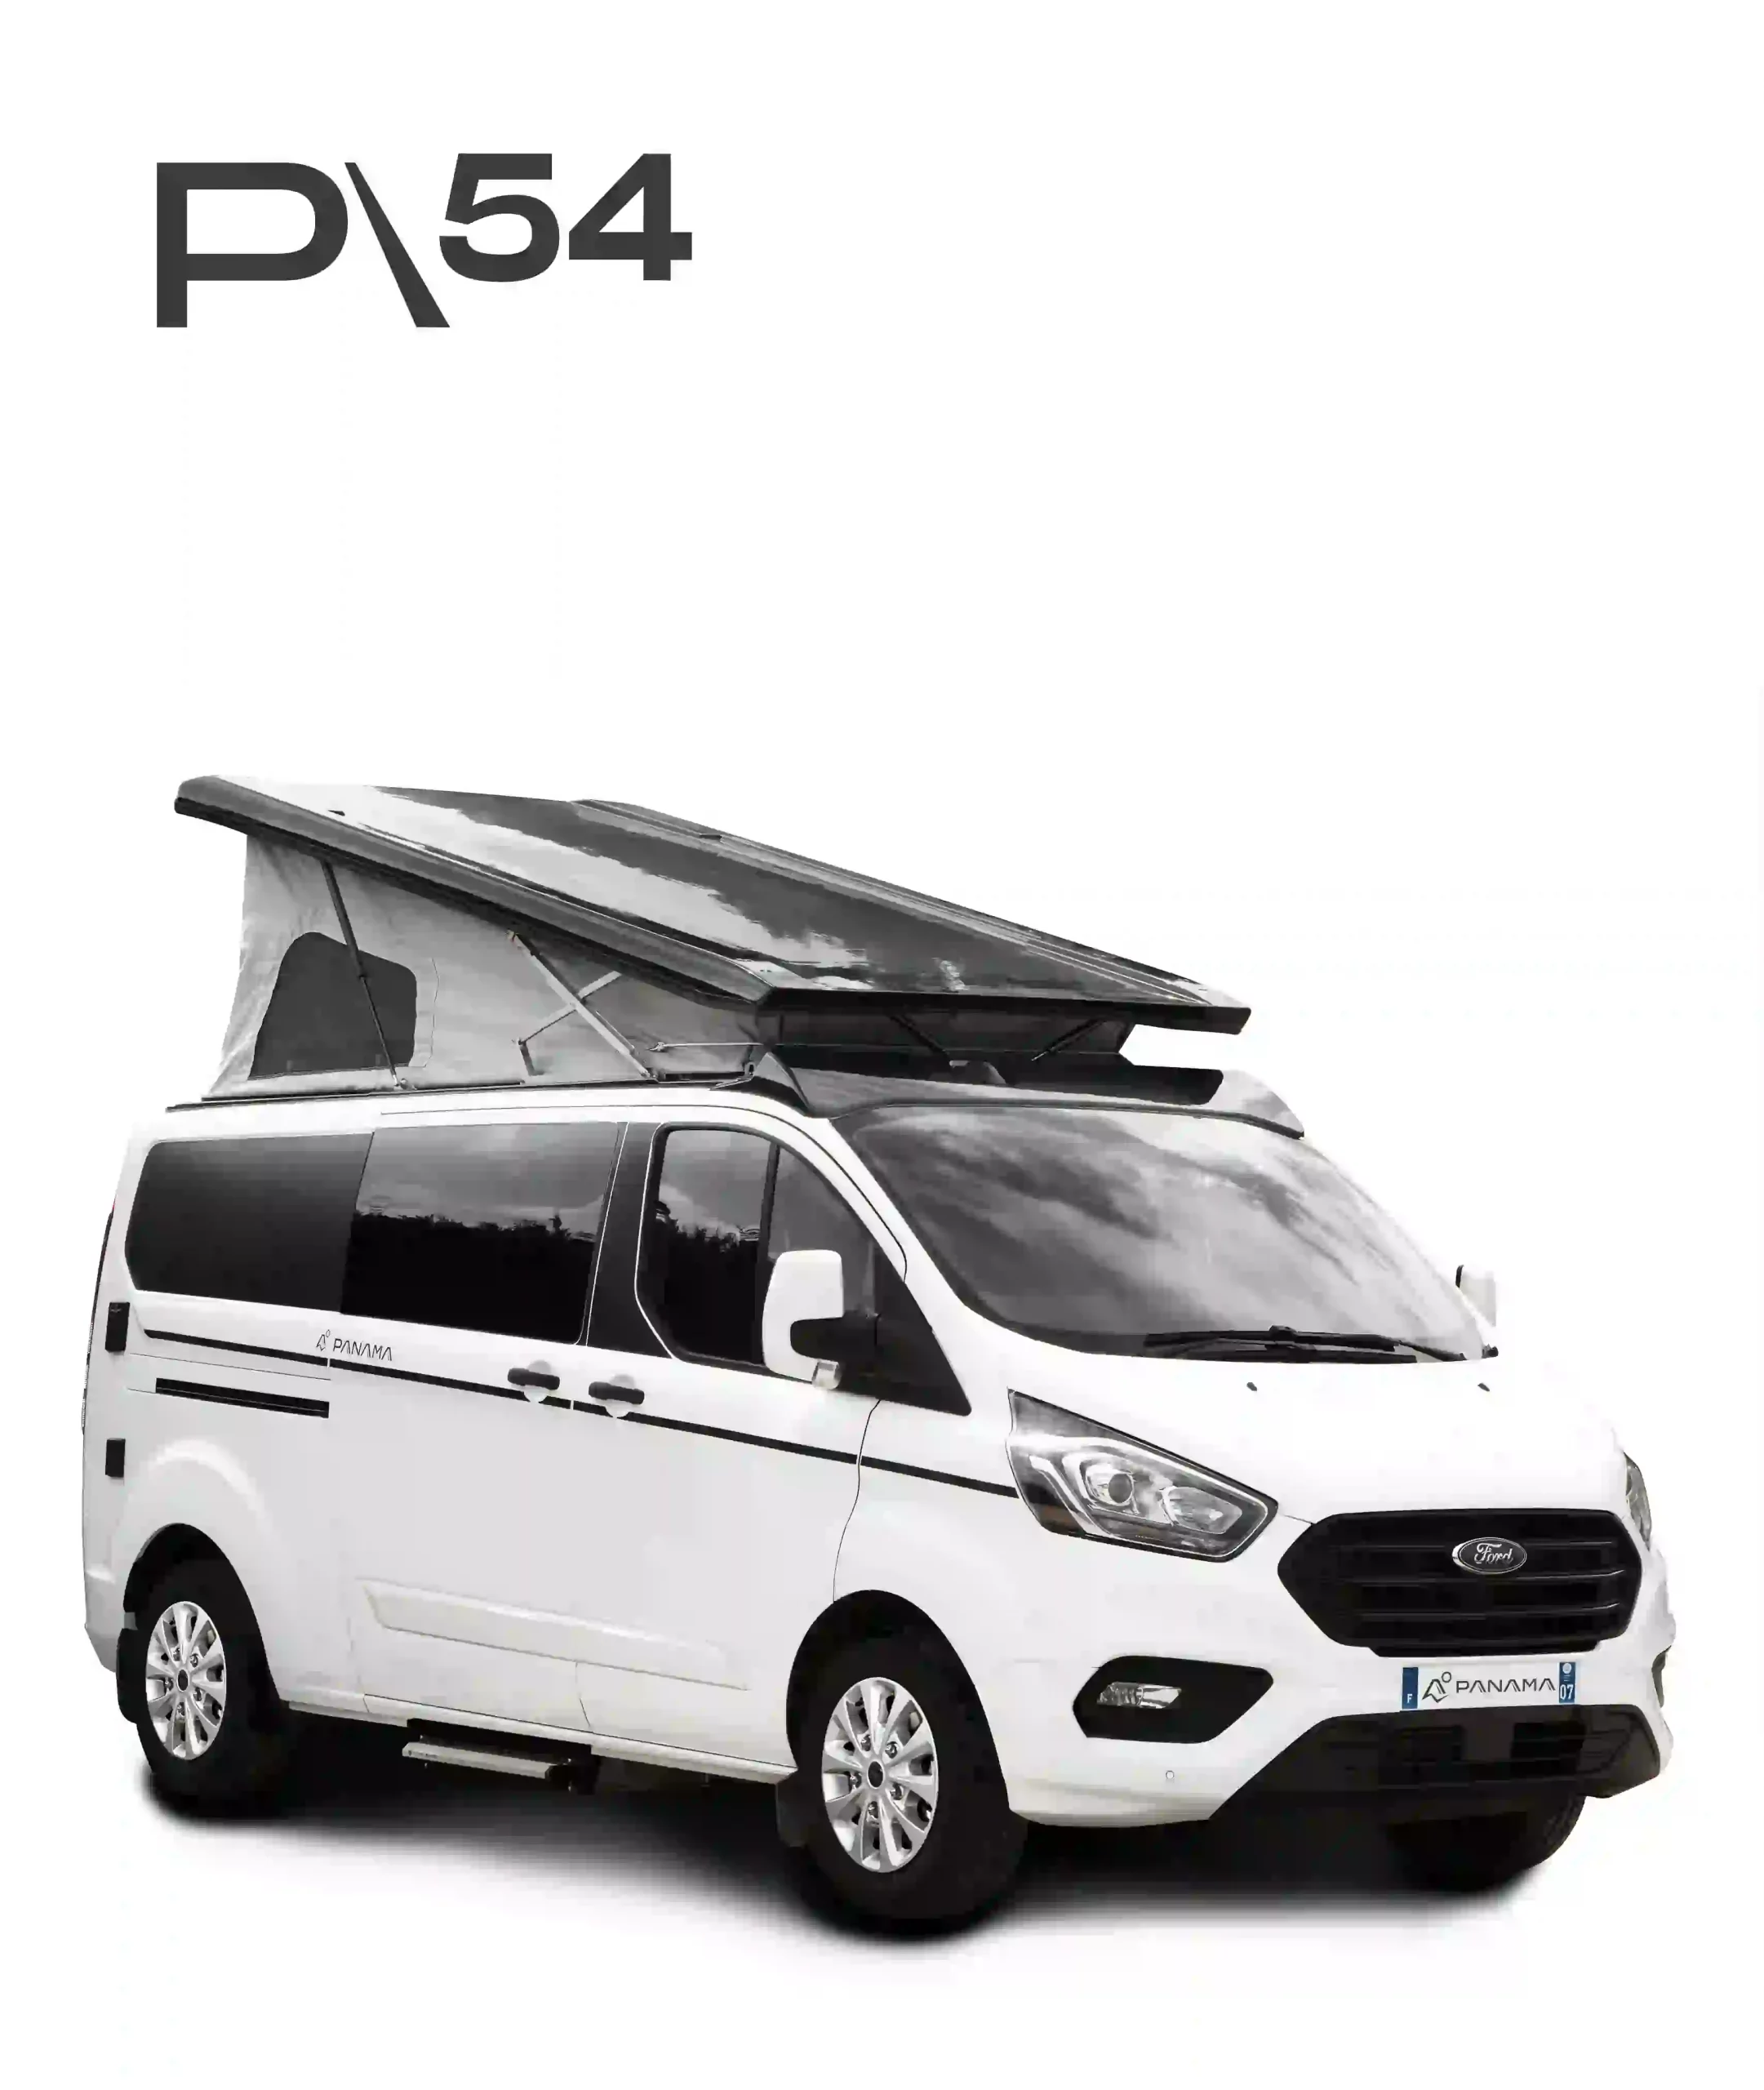 Panama Vans P54